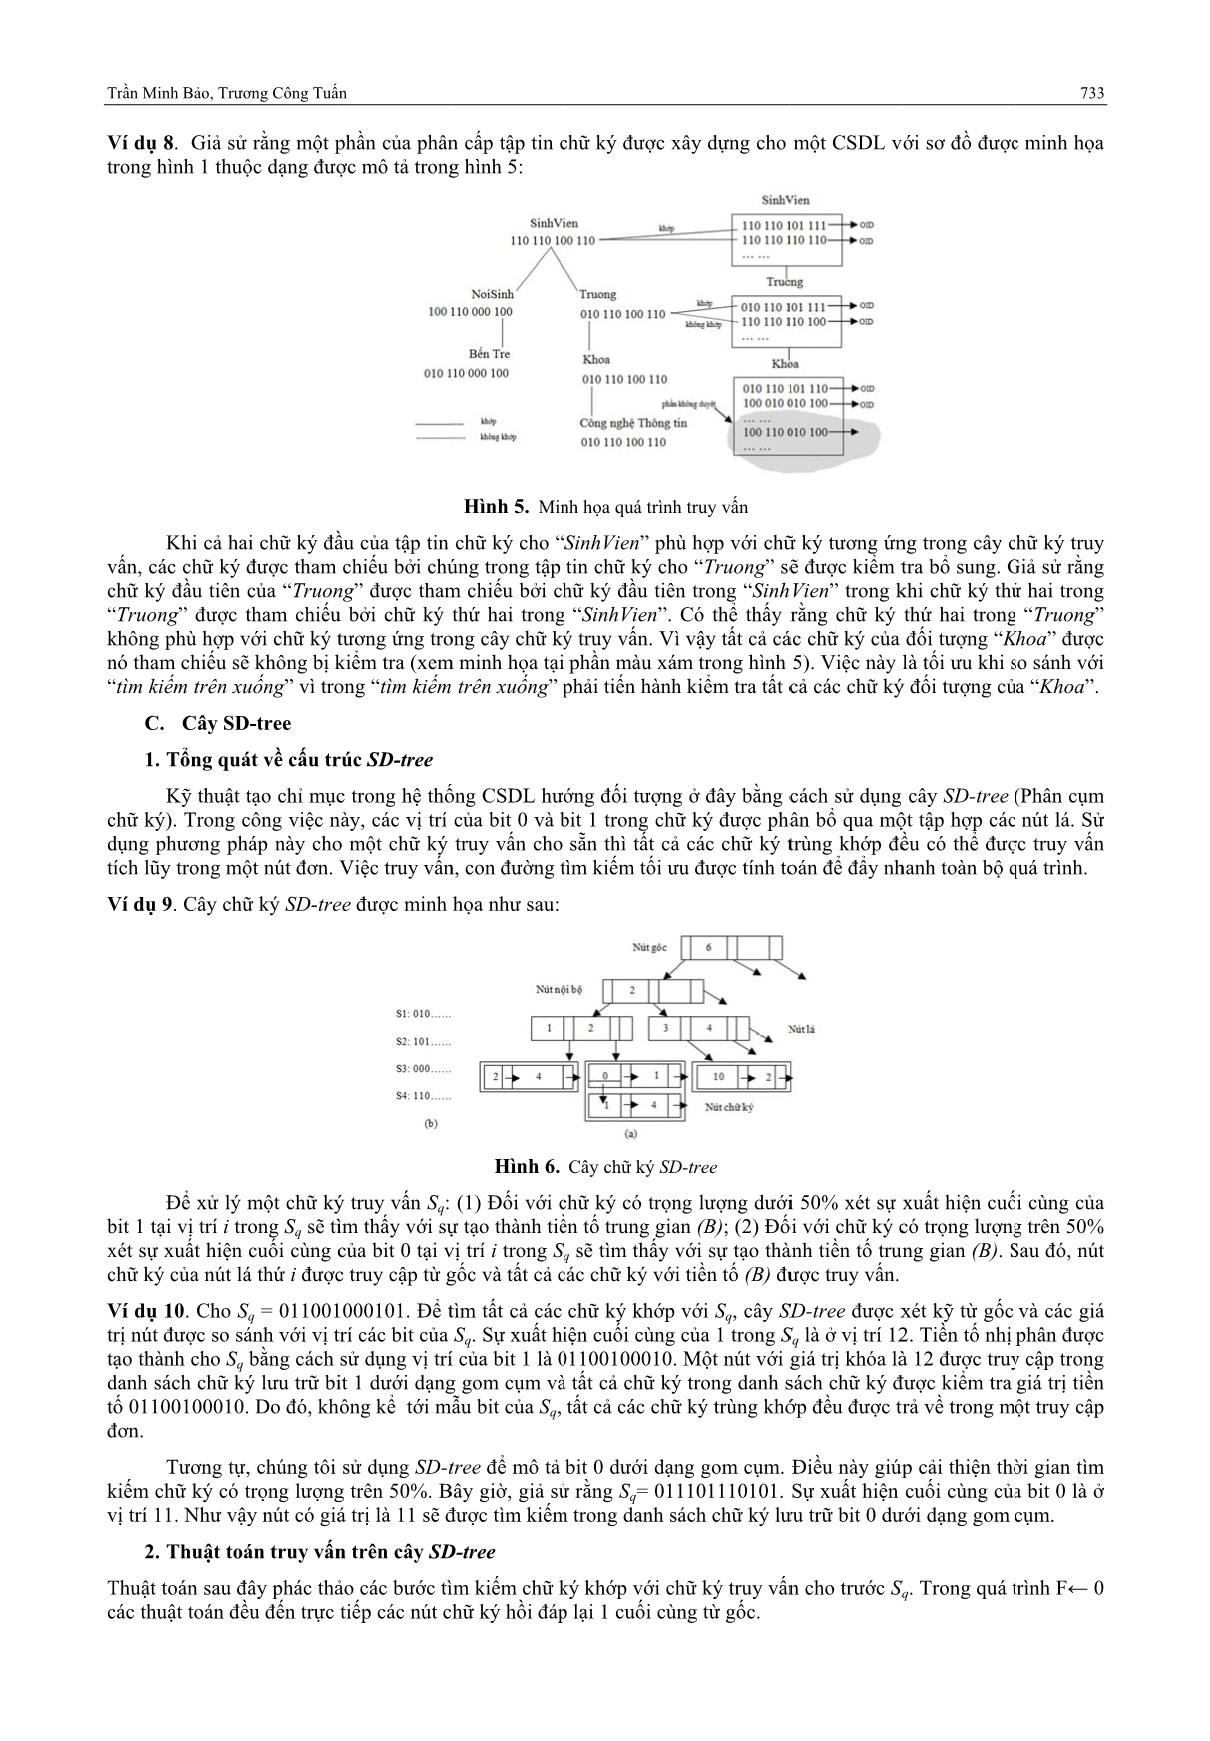 Truy vấn hướng đối tượng dựa trên phân cấp tập tin chữ ký và cây SD-Tree trang 5